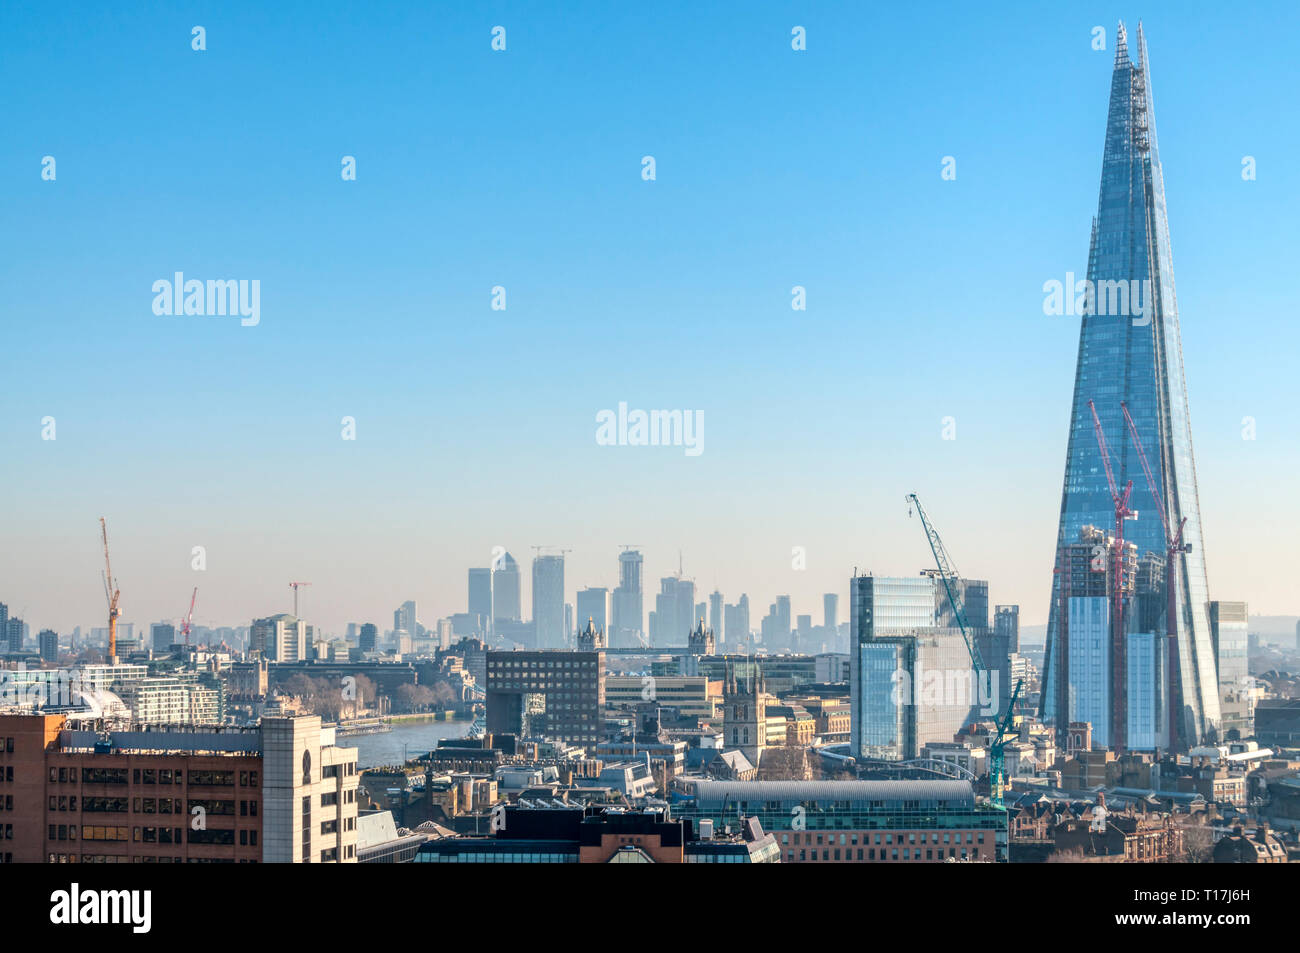 Einen erhöhten Blick auf den Shard London Bridge mit dem Bürogebäude der Docklands & Canary Wharf im Hintergrund. Stockfoto